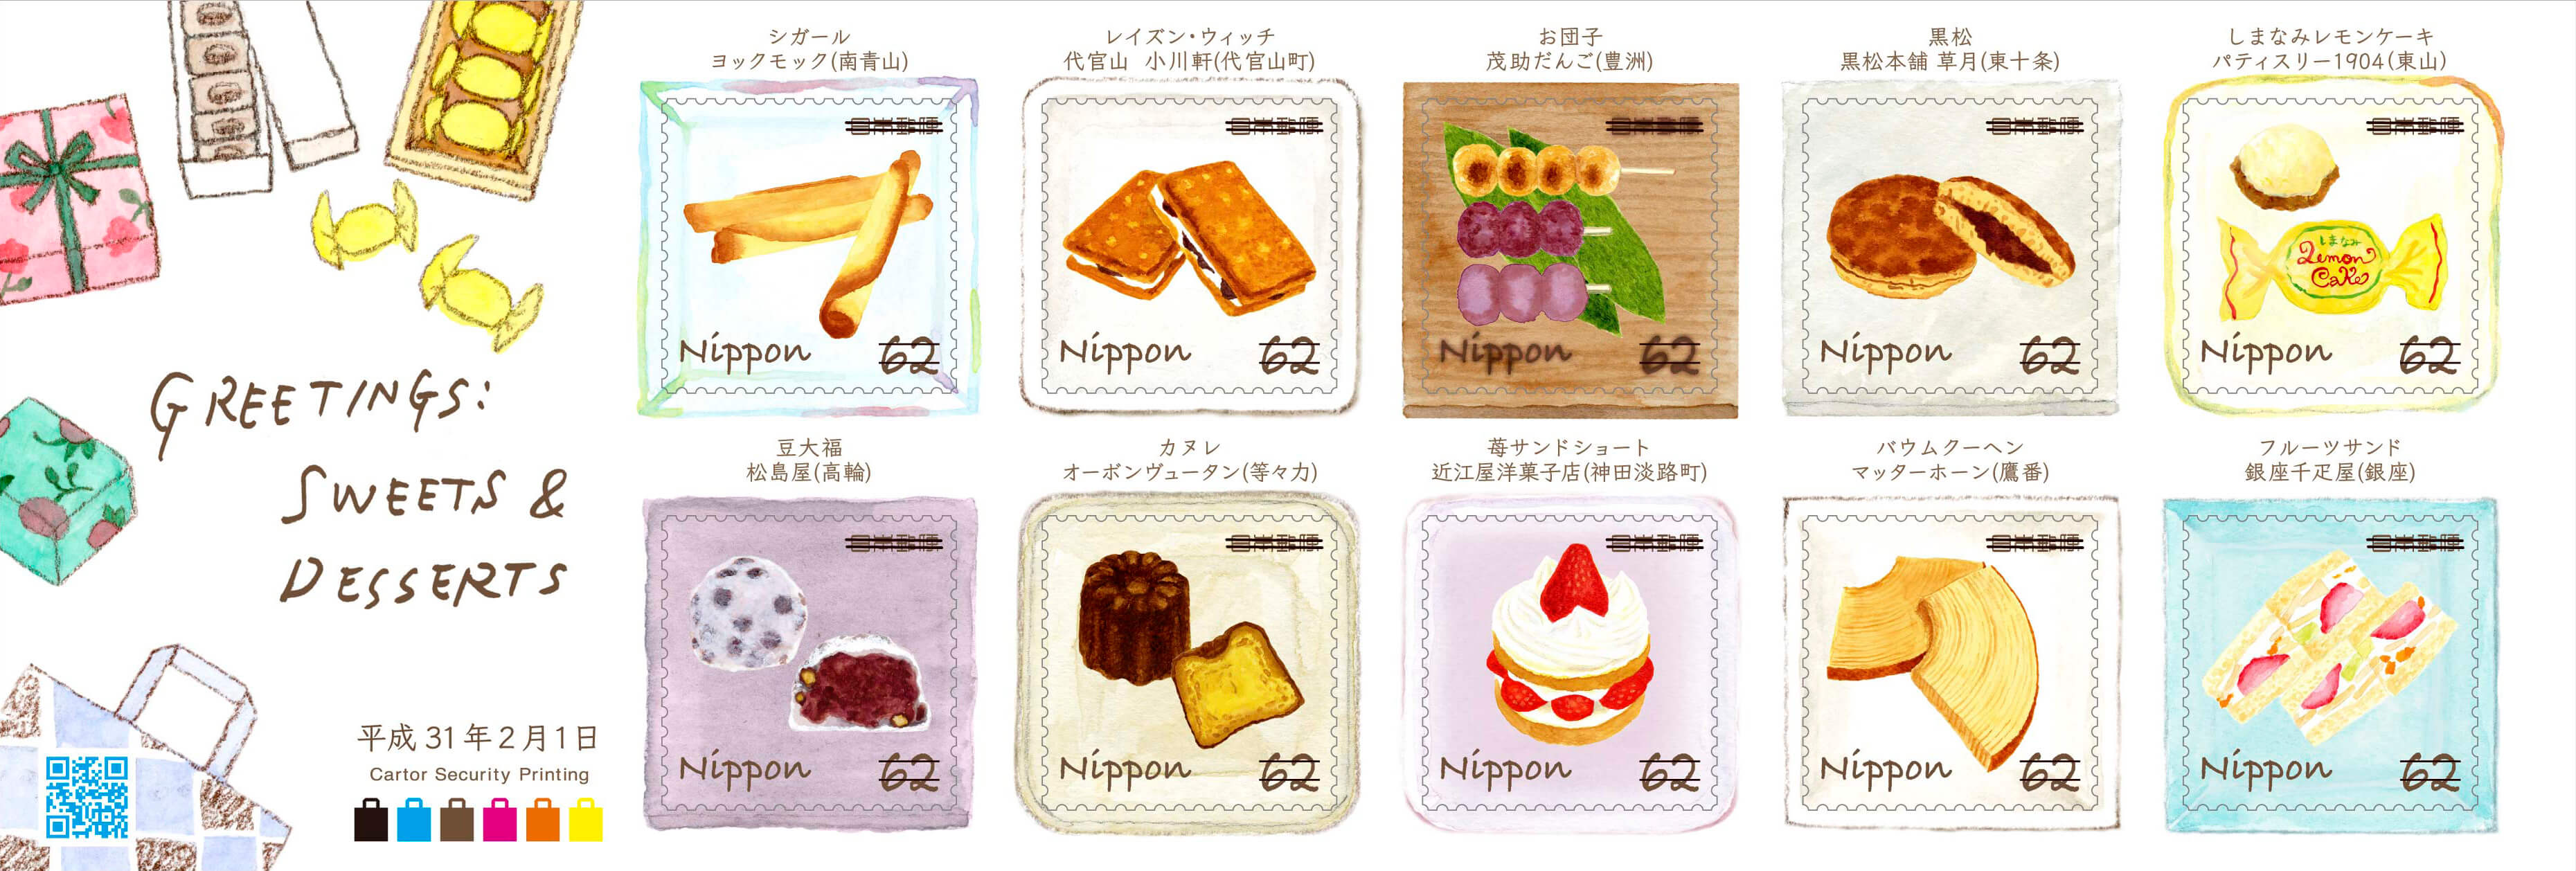 スウィーツ切手 sweets stamp 62円切手シート